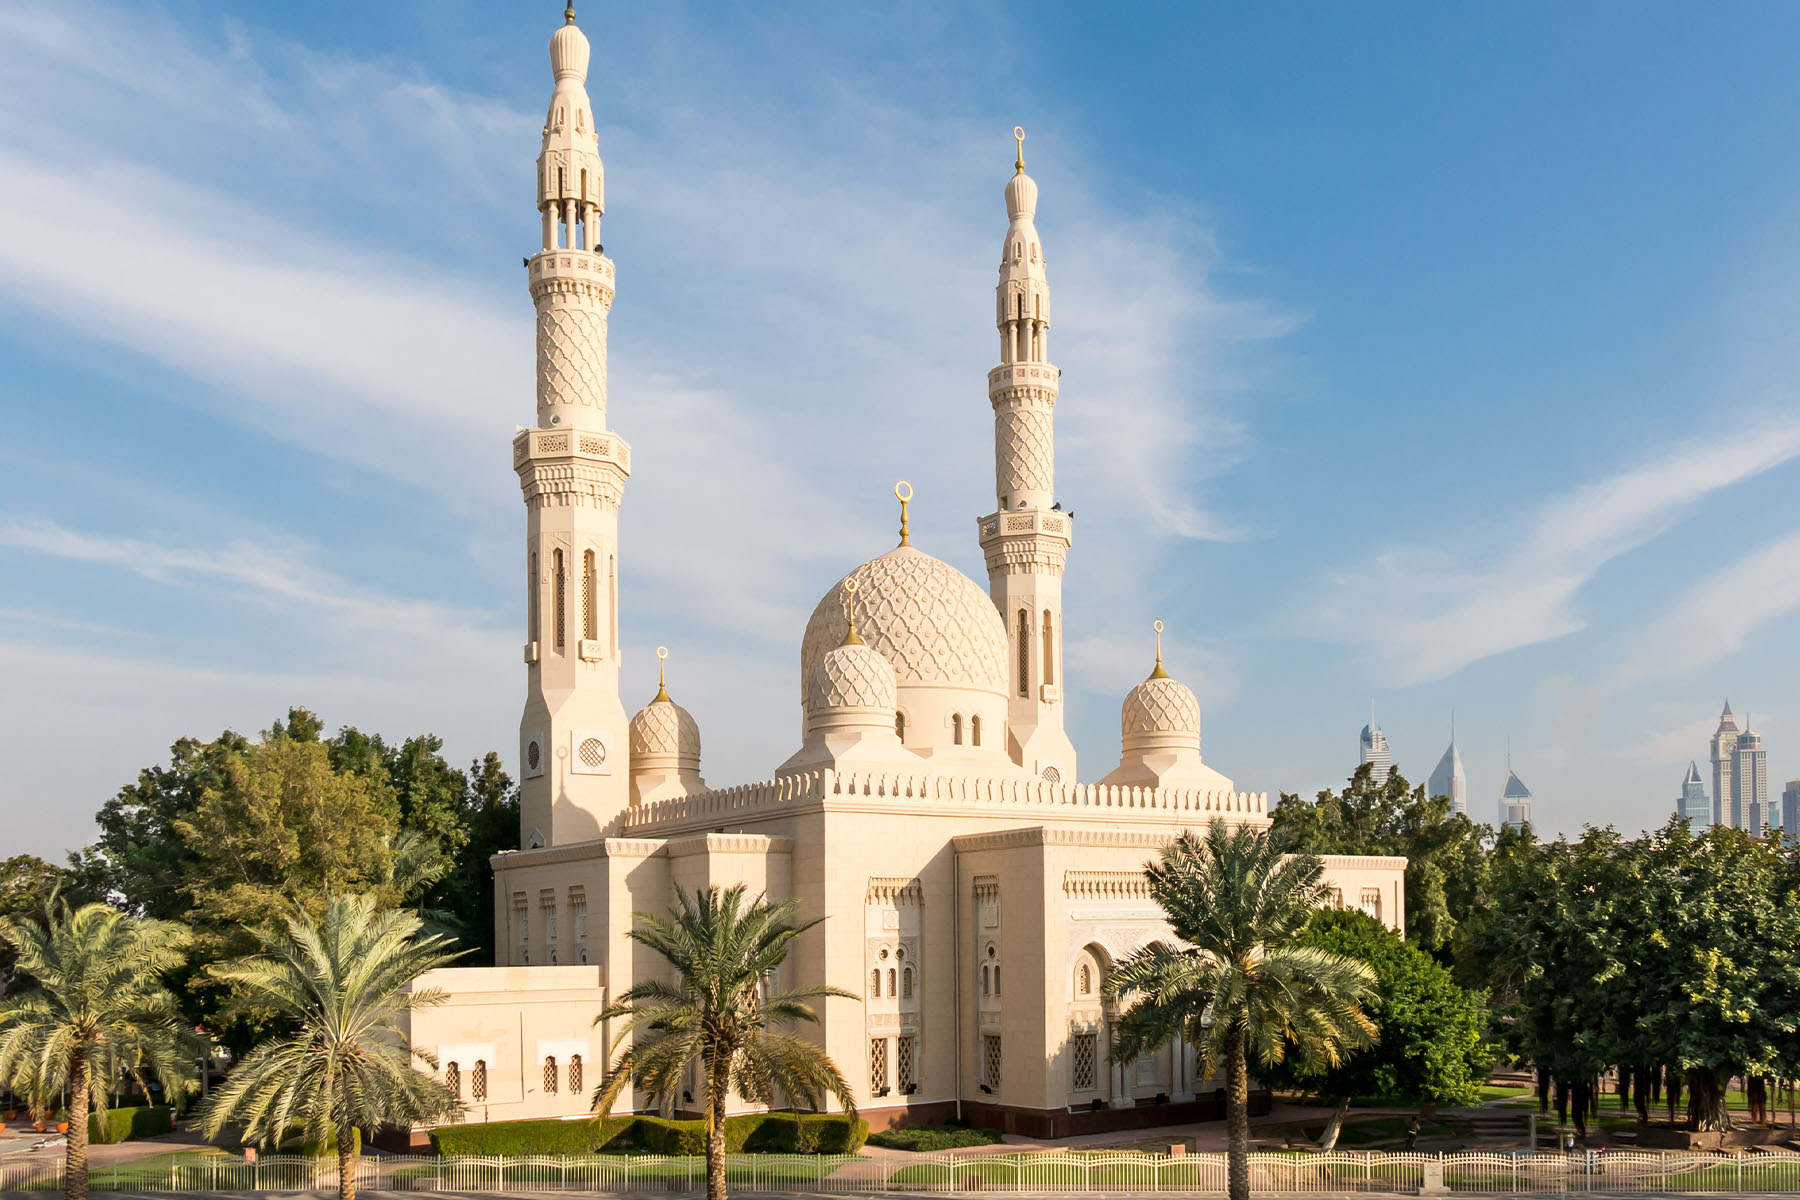 The Jumeirah mosque in Dubai